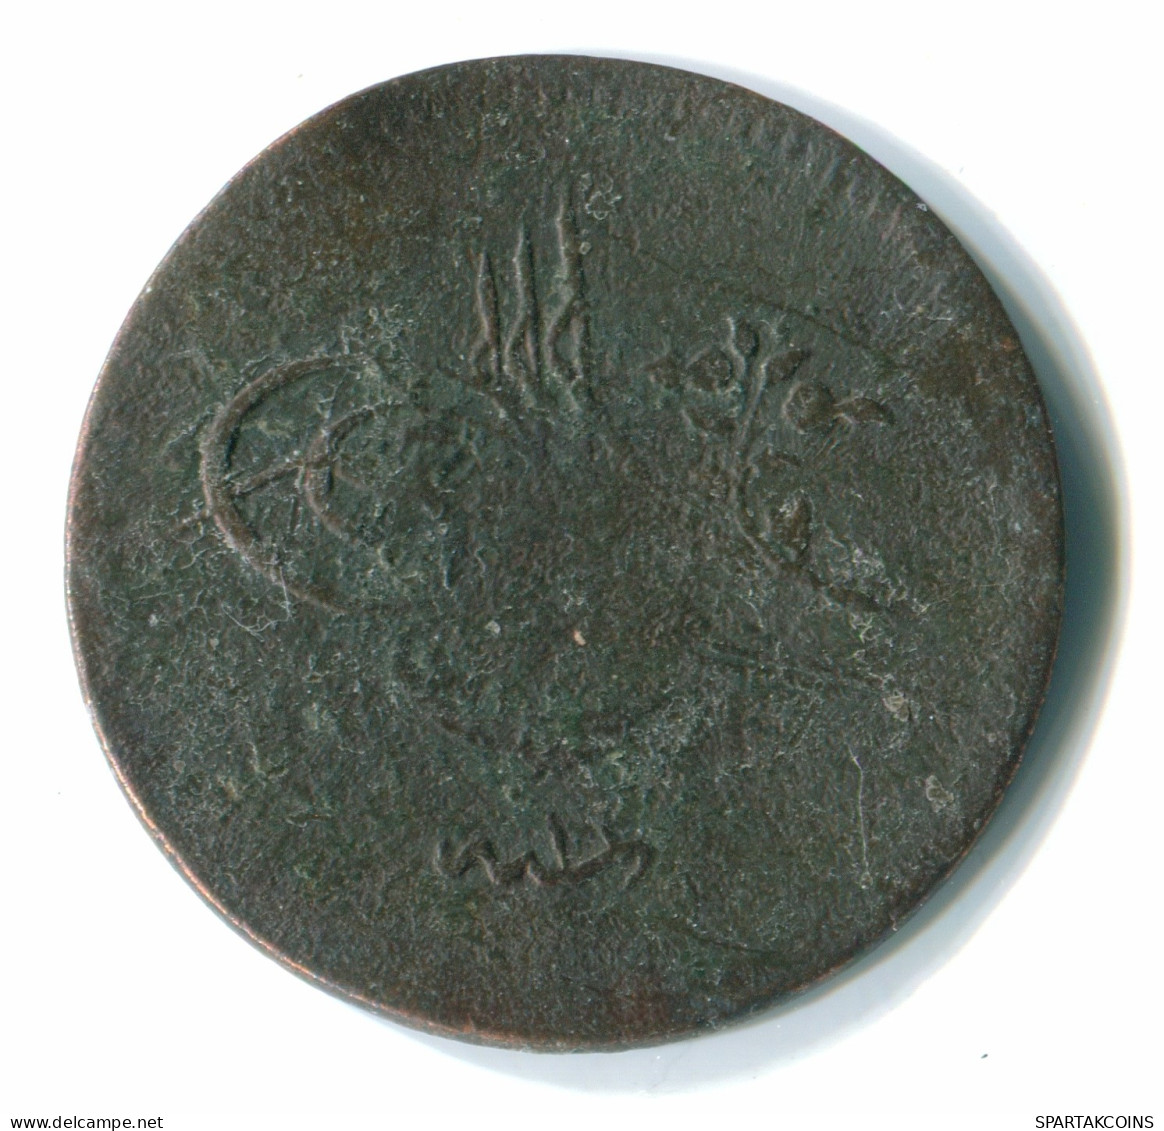 ISLAMIC OTTOMAN EMPIRE Abdulmecid I 5 Para AH1255 Islamic Coin #MED10105.7.F.A - Islamic